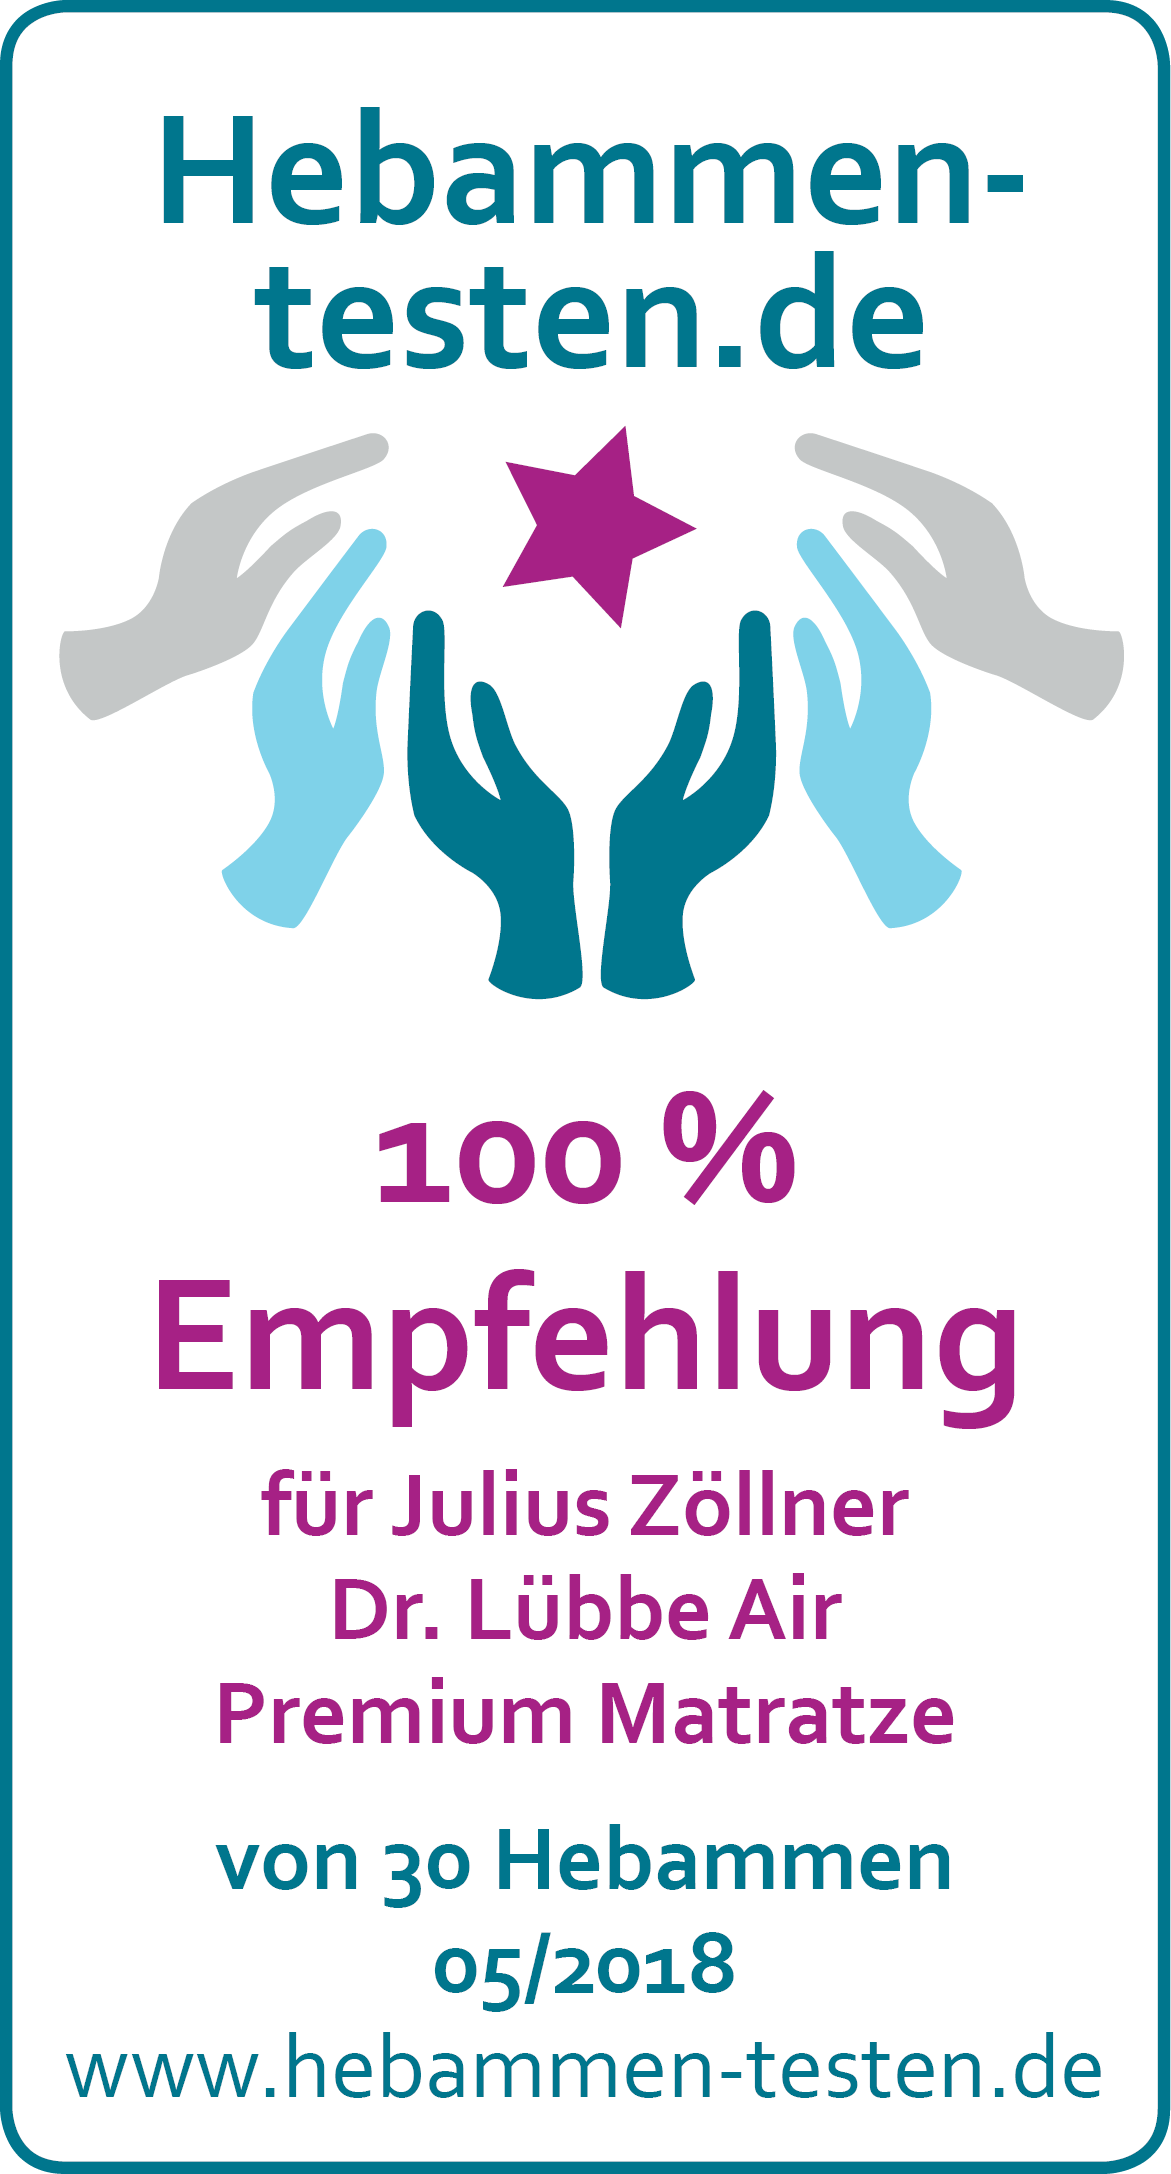 Hebammen-testen.de Siegel für Julius Zöllner Dr. Lübbe Air Premium Matratze 100 % Empfehlung von 30 Hebammen im Mai 2018 getestet.